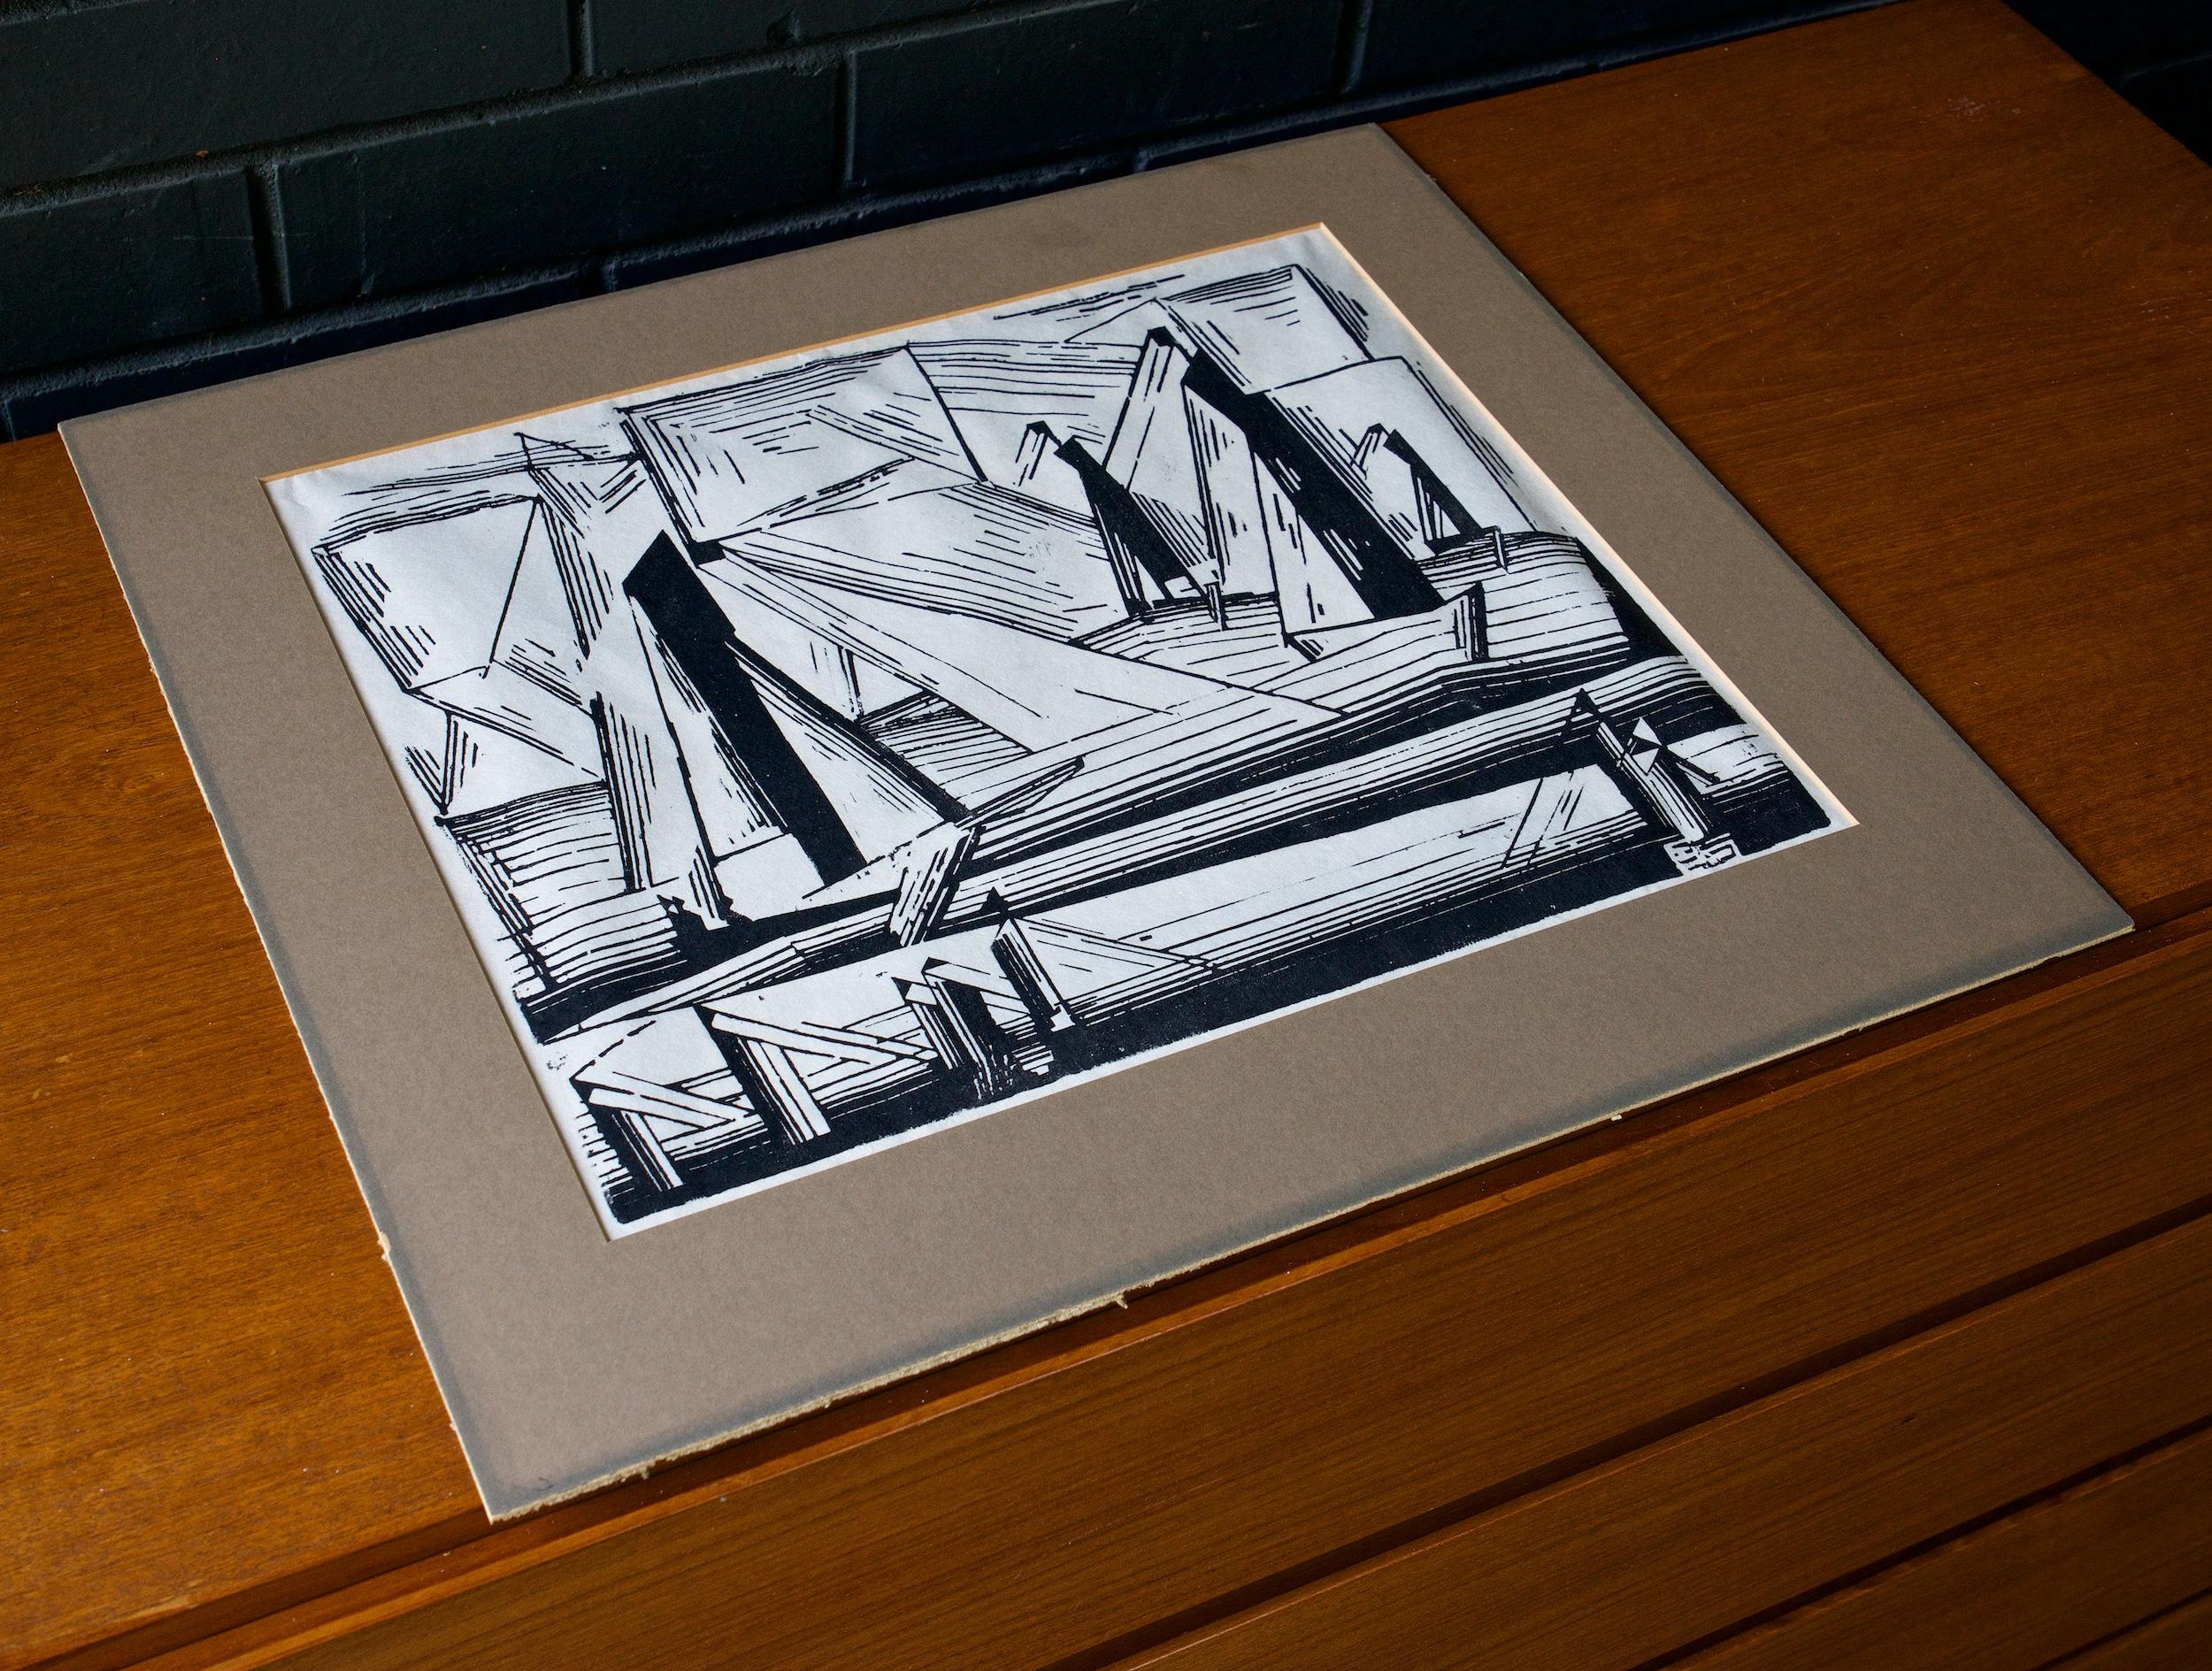 Lyonel Feininger (Américain, 1871-1956) Bateaux de pêche, 1921, gravure sur bois sur papier. Cet exemple est tiré de l'édition n° 49 du Print Club de Cleveland pour 1971, une édition posthume de 252 exemplaires. 

Image 14.75 x 11.75 in.
Matte